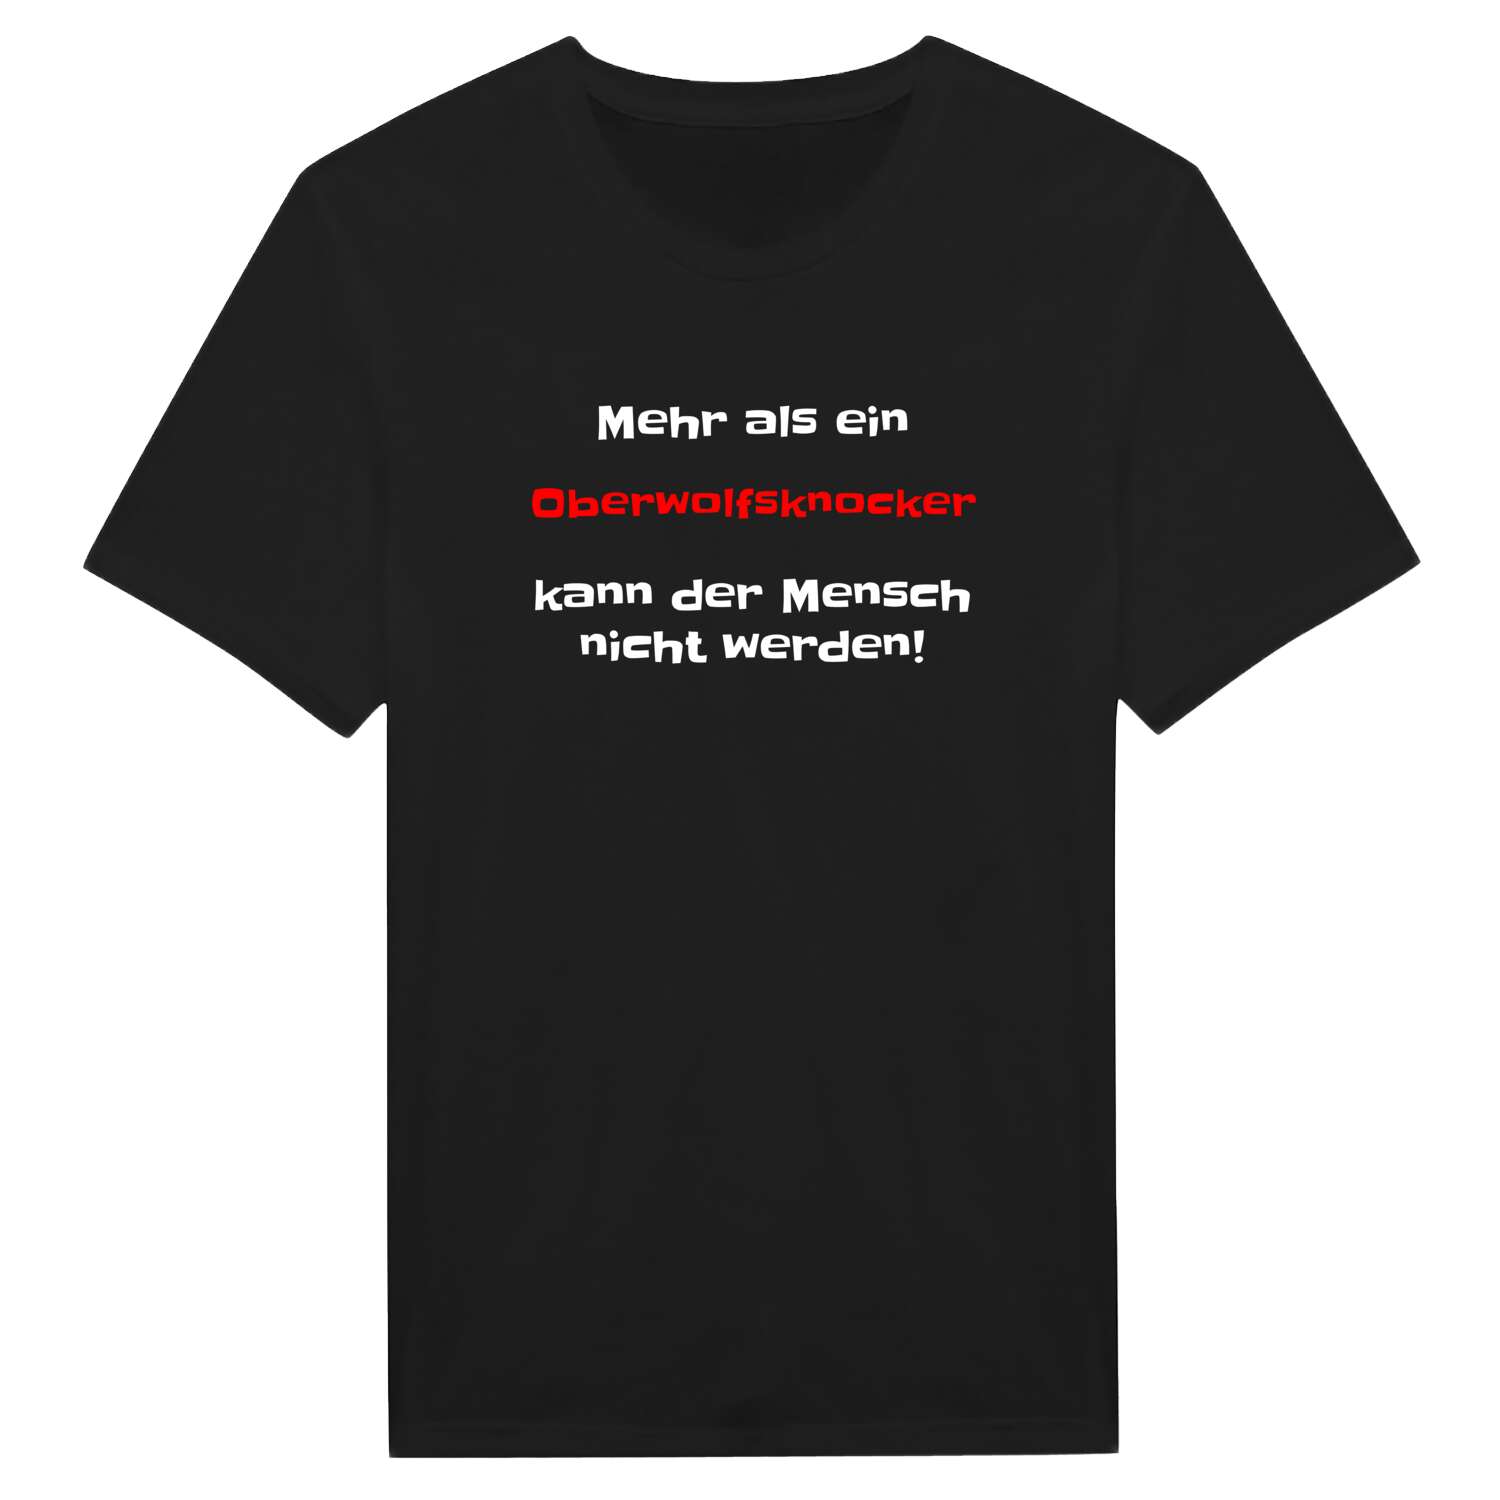 Oberwolfsknock T-Shirt »Mehr als ein«